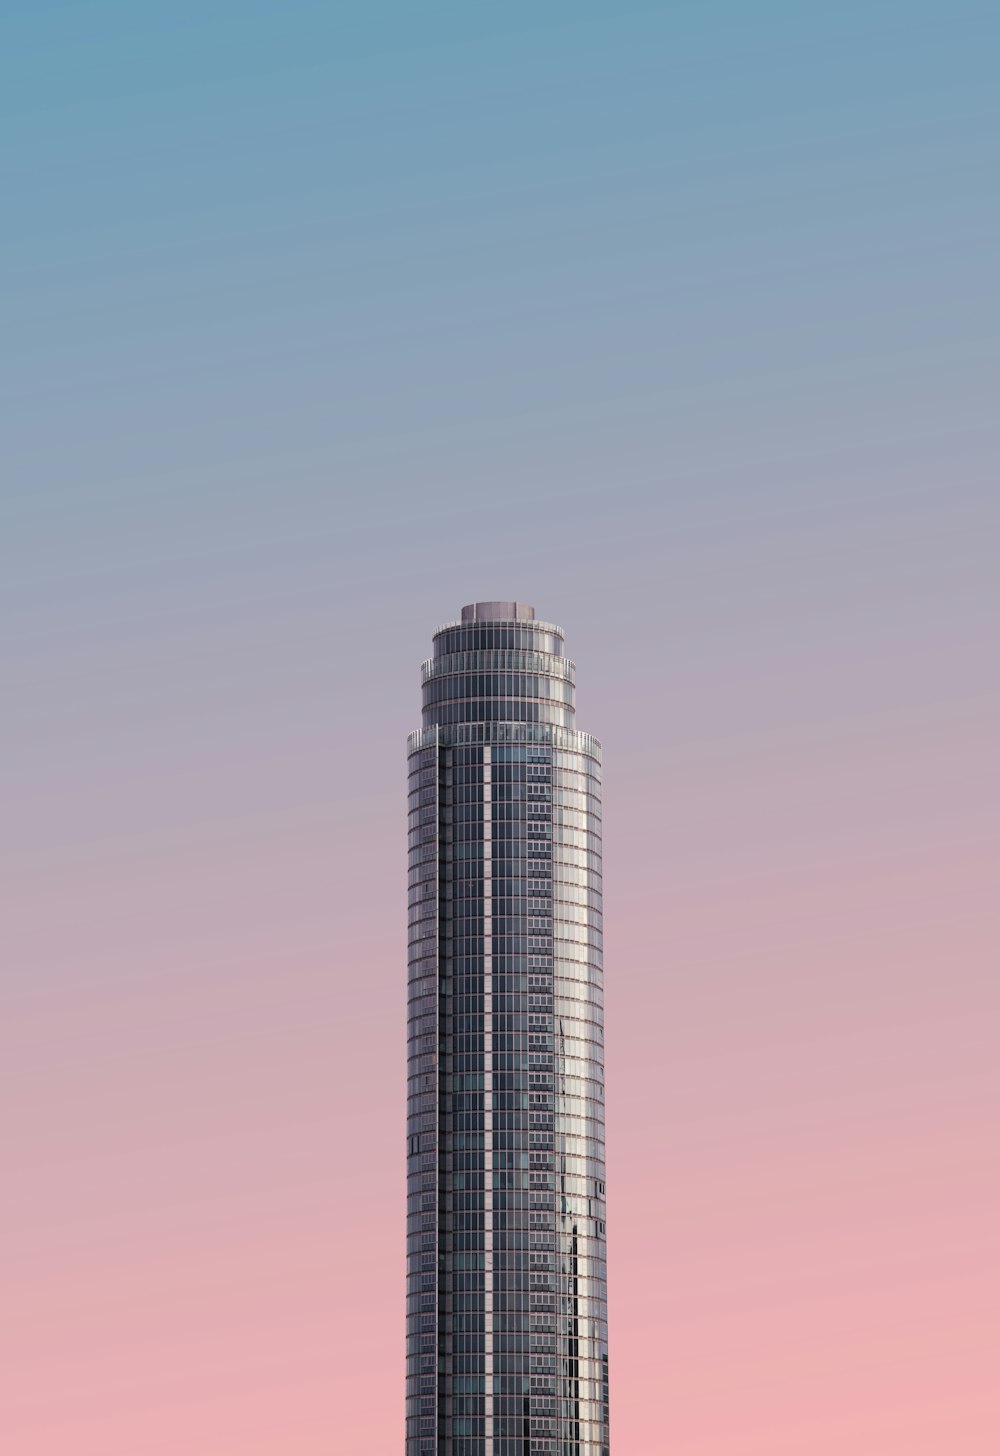 푸른 하늘 아래 회색 타워 건물